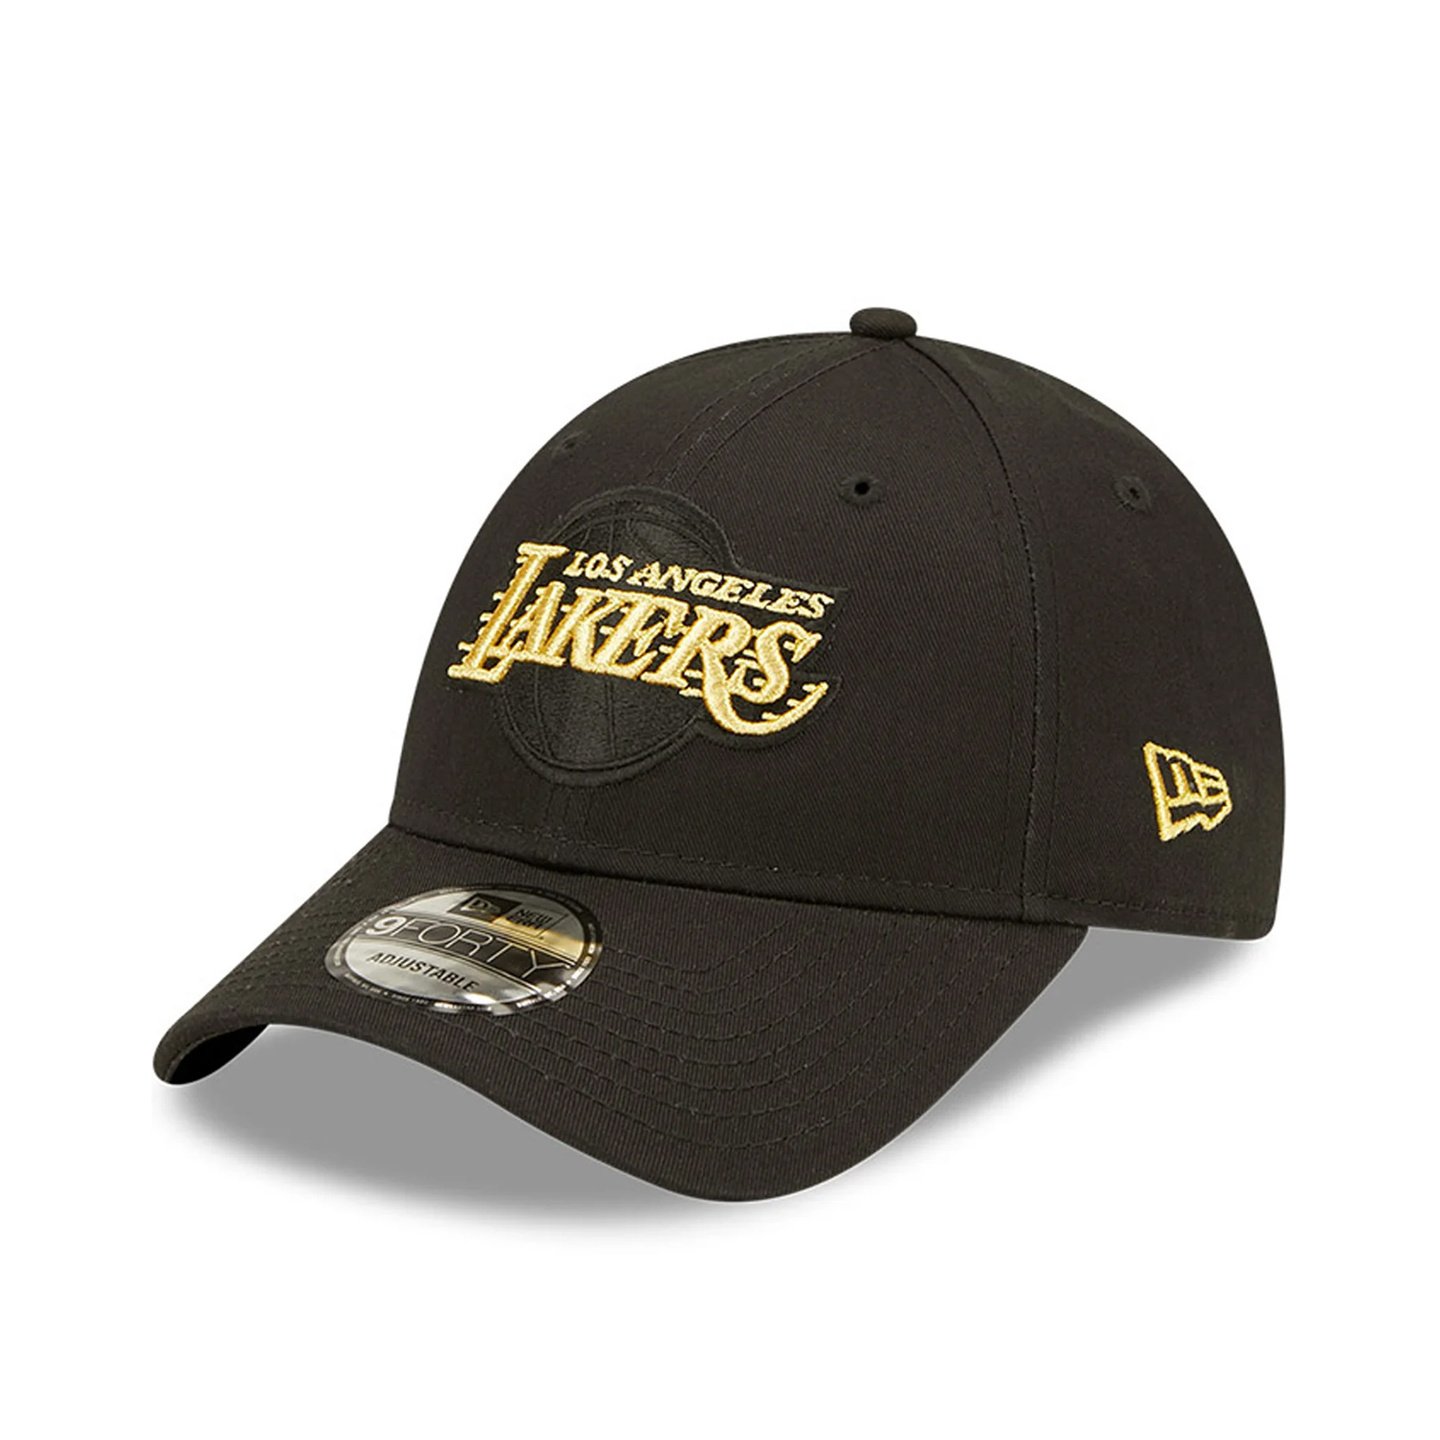 New Era Cap - 9FORTY - Los Angeles Lakers Cap - One Size - Verstelbaar - New Era Caps - 9Forty - Pet Heren - Pet Dames - Petten - Caps